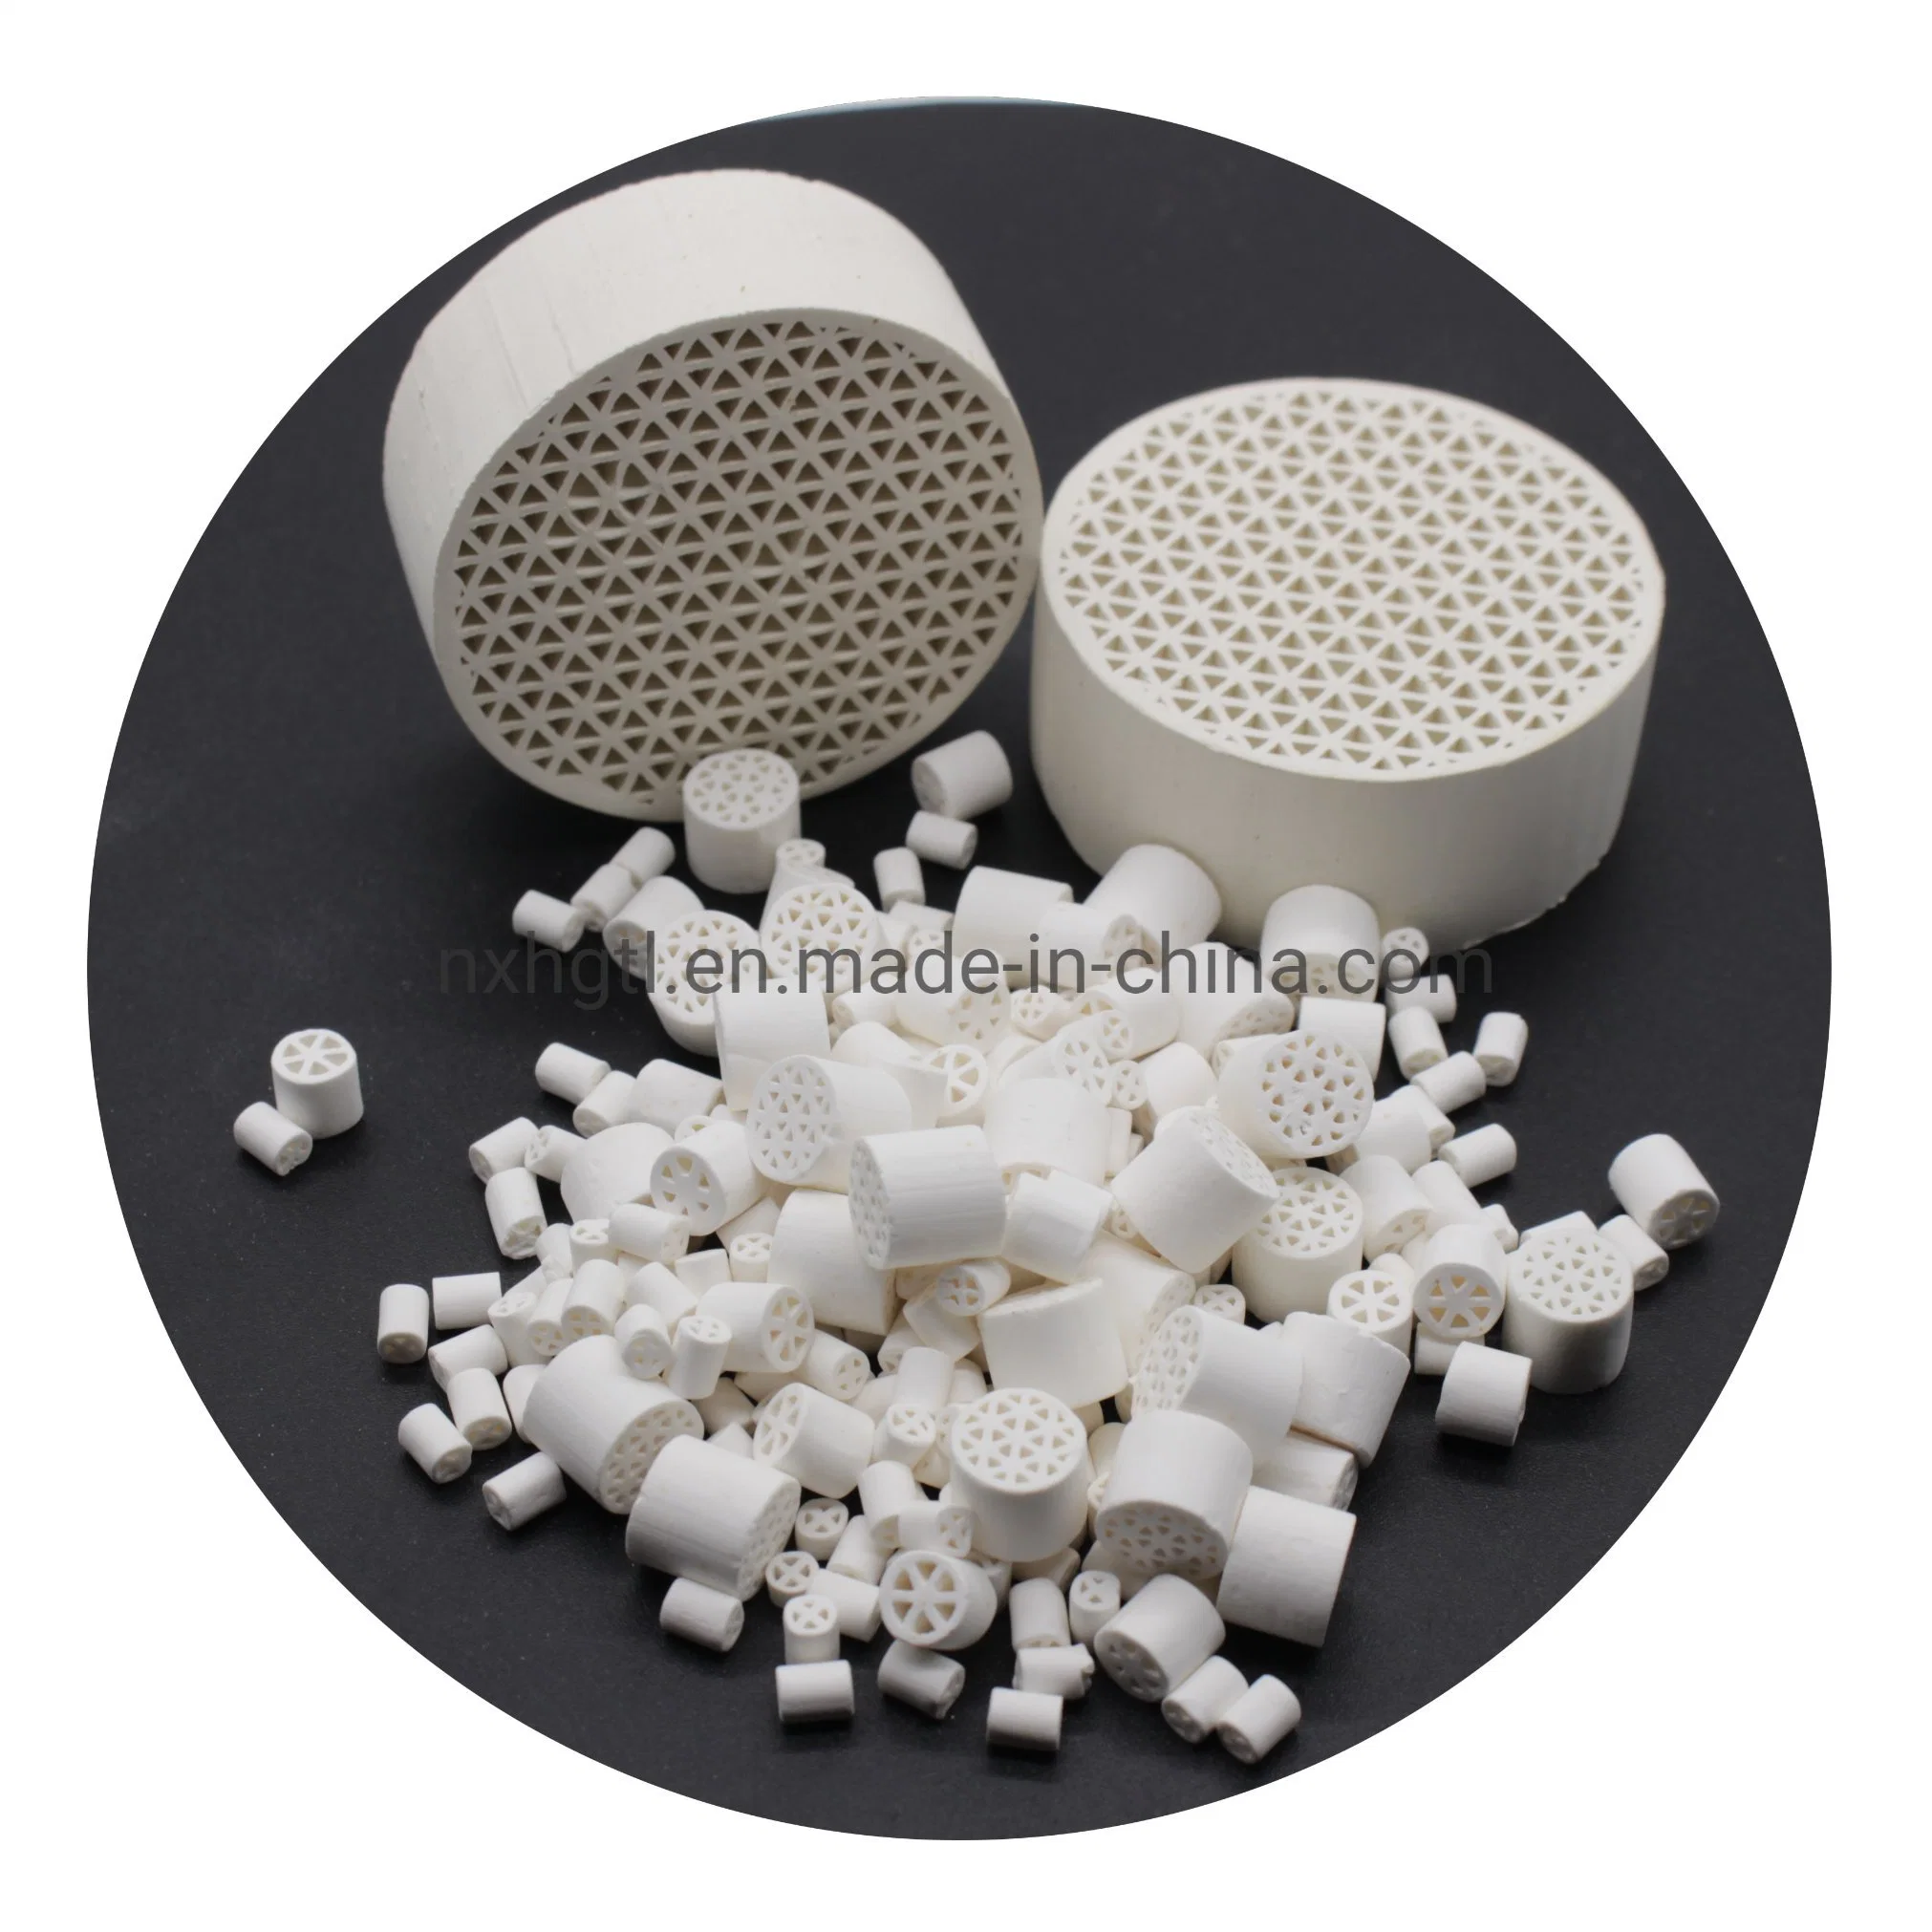 Honeycomb Ceramic Proppant High Alumina Honecycomb Ceramic Proppant for Catalyst Support Honeycomb Ceramic Proppant